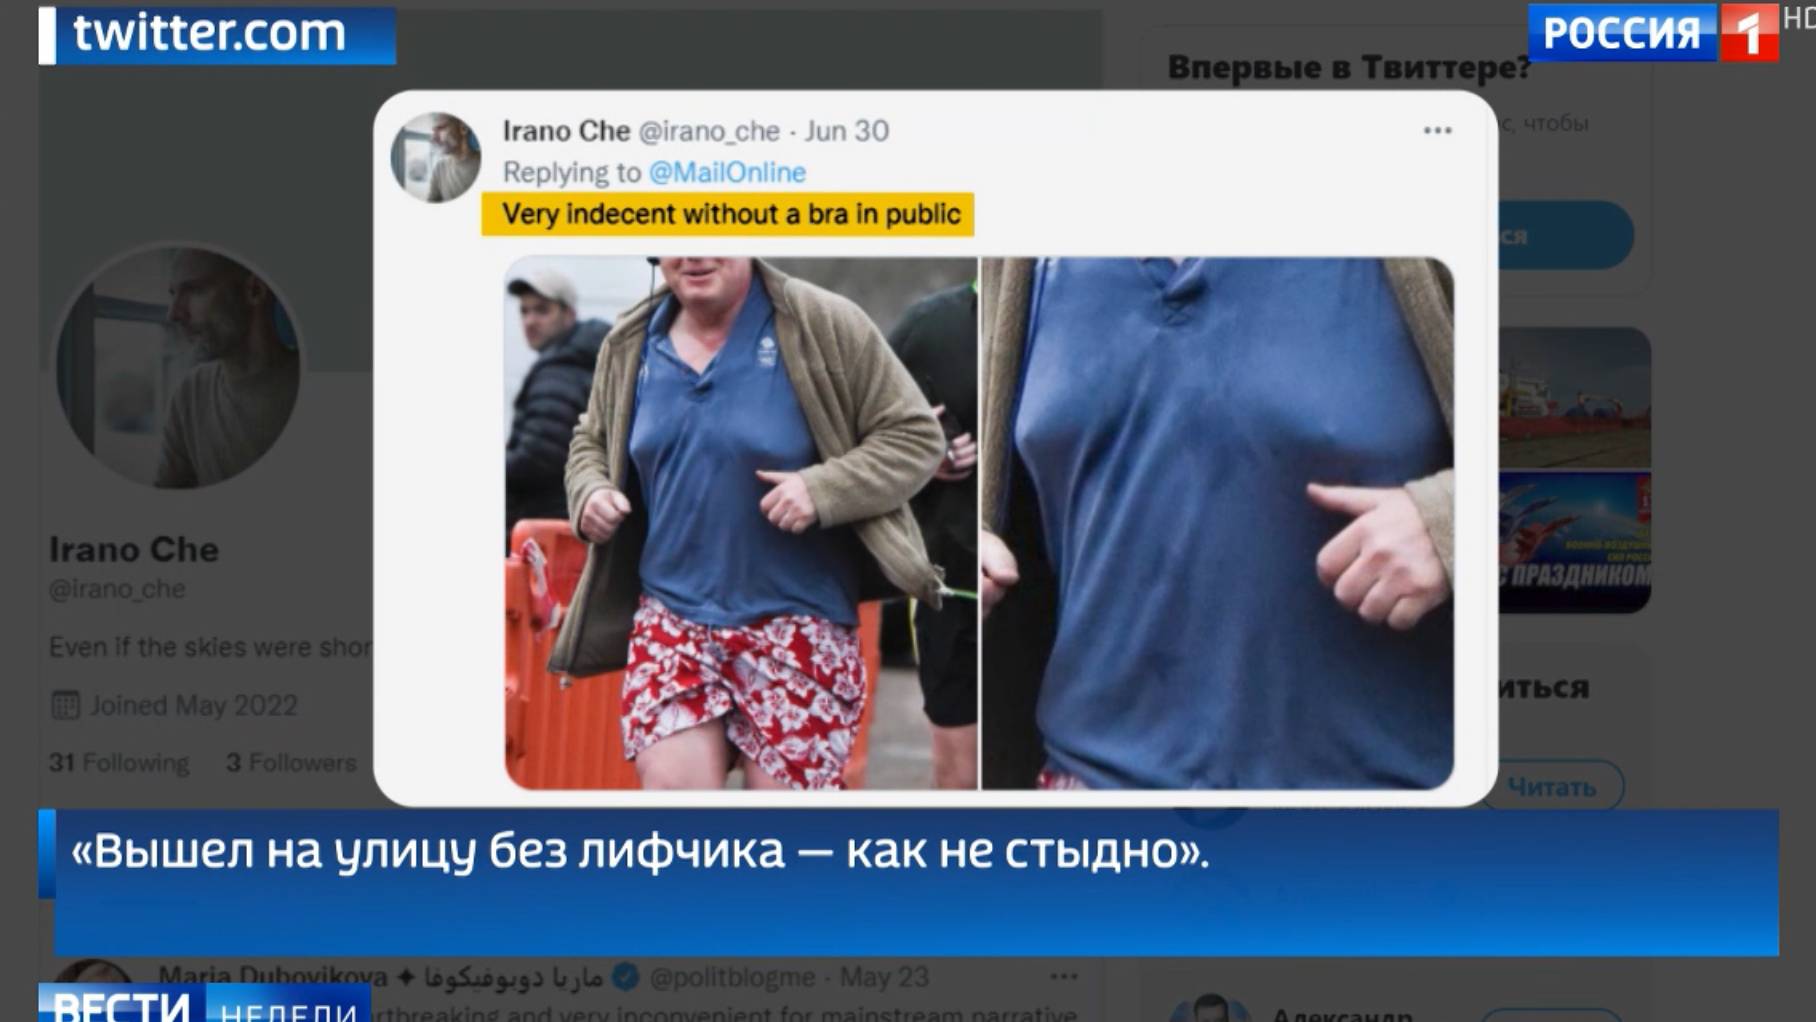 Rosyjska tv pokazuje zdjęcie z twitera, z pryzbliżeniem torsu Johnsona i zarysowanych piersi